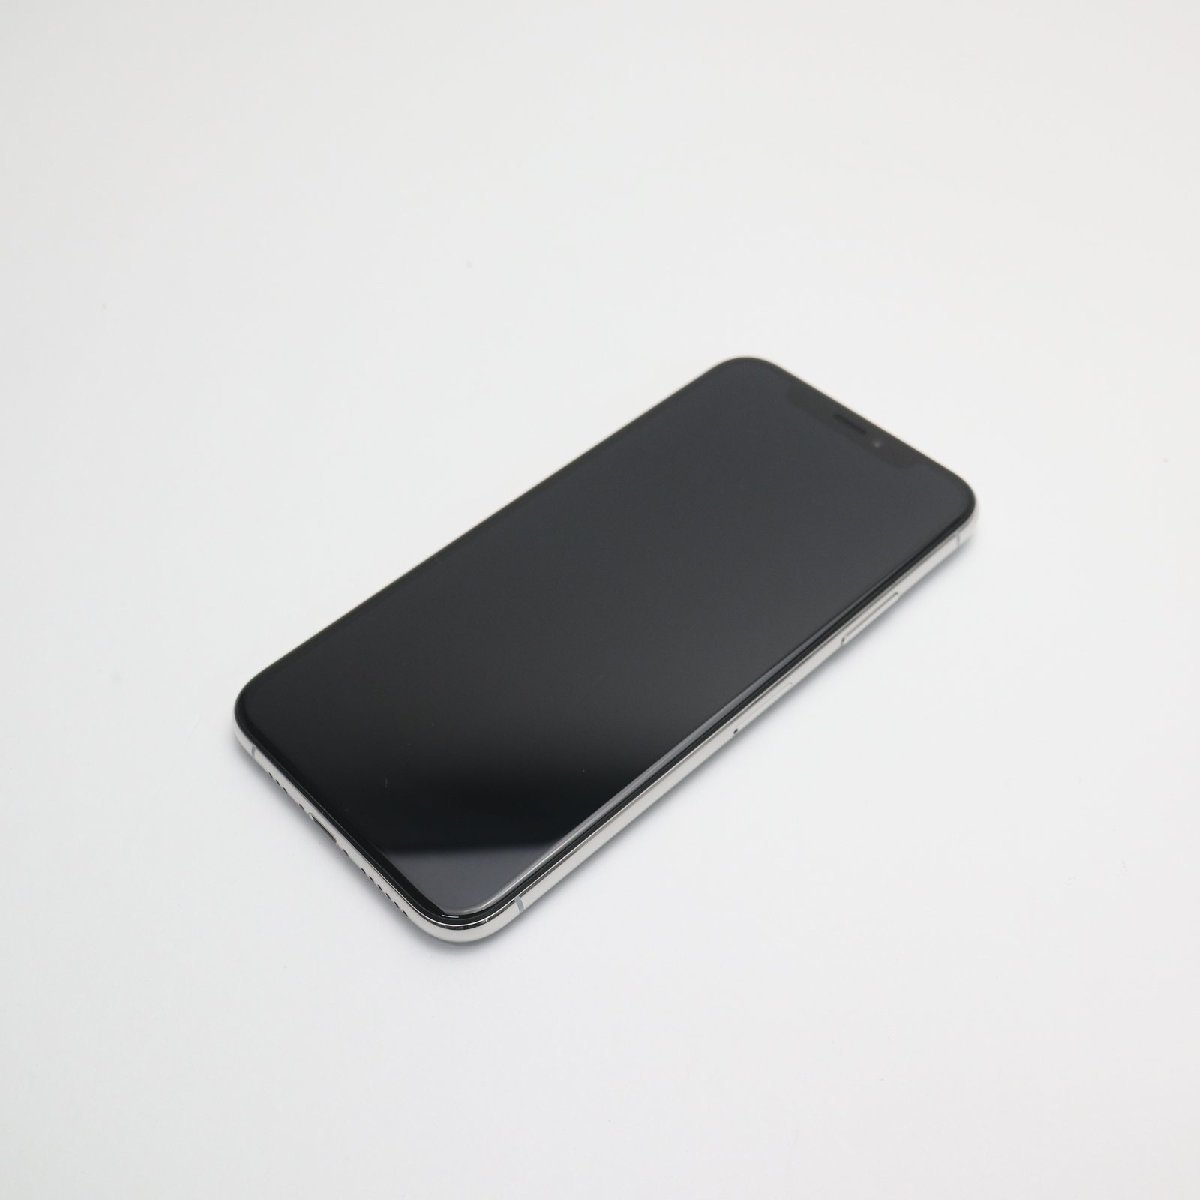 新品同様 SIMフリー iPhoneXS 64GB スペースグレイ スマホ 白ロム 即日